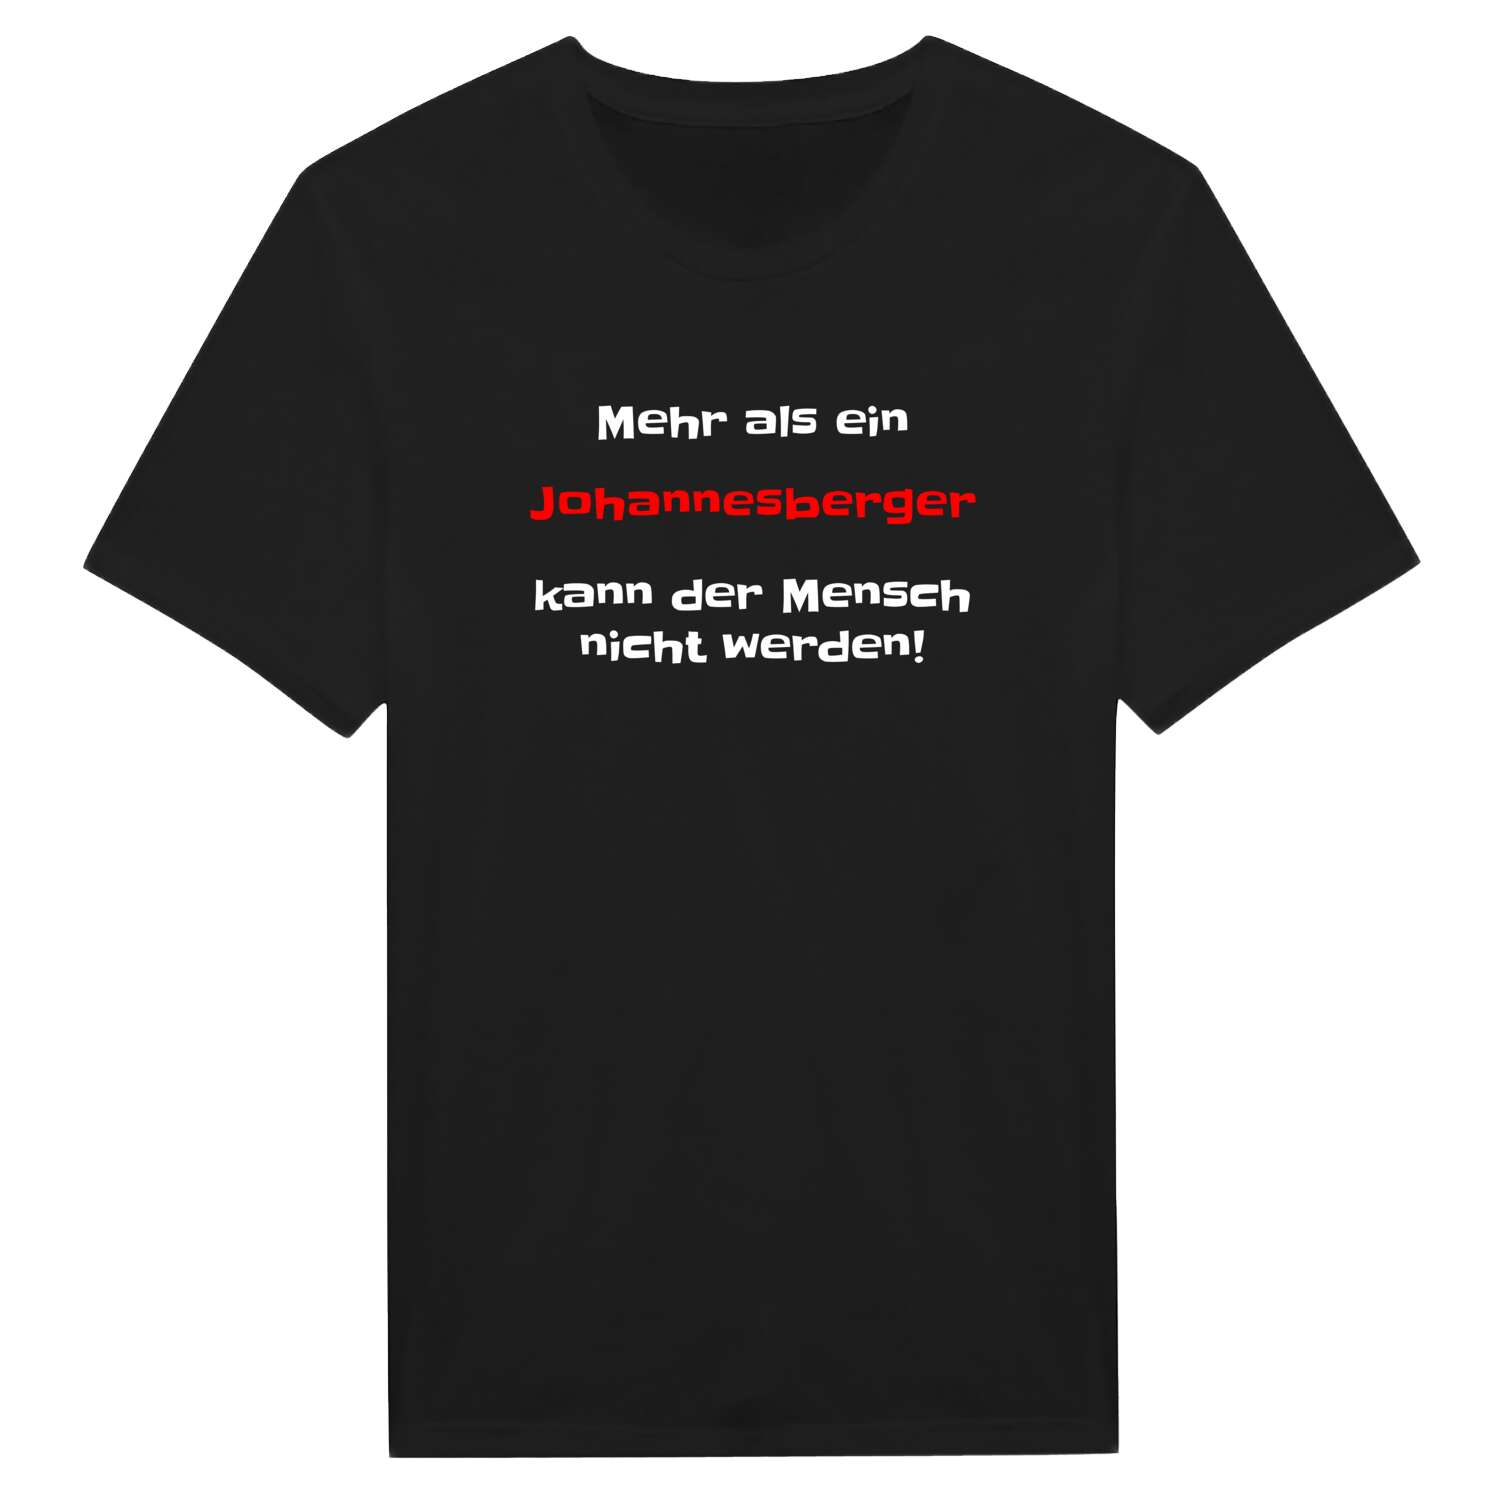 Johannesberg T-Shirt »Mehr als ein«